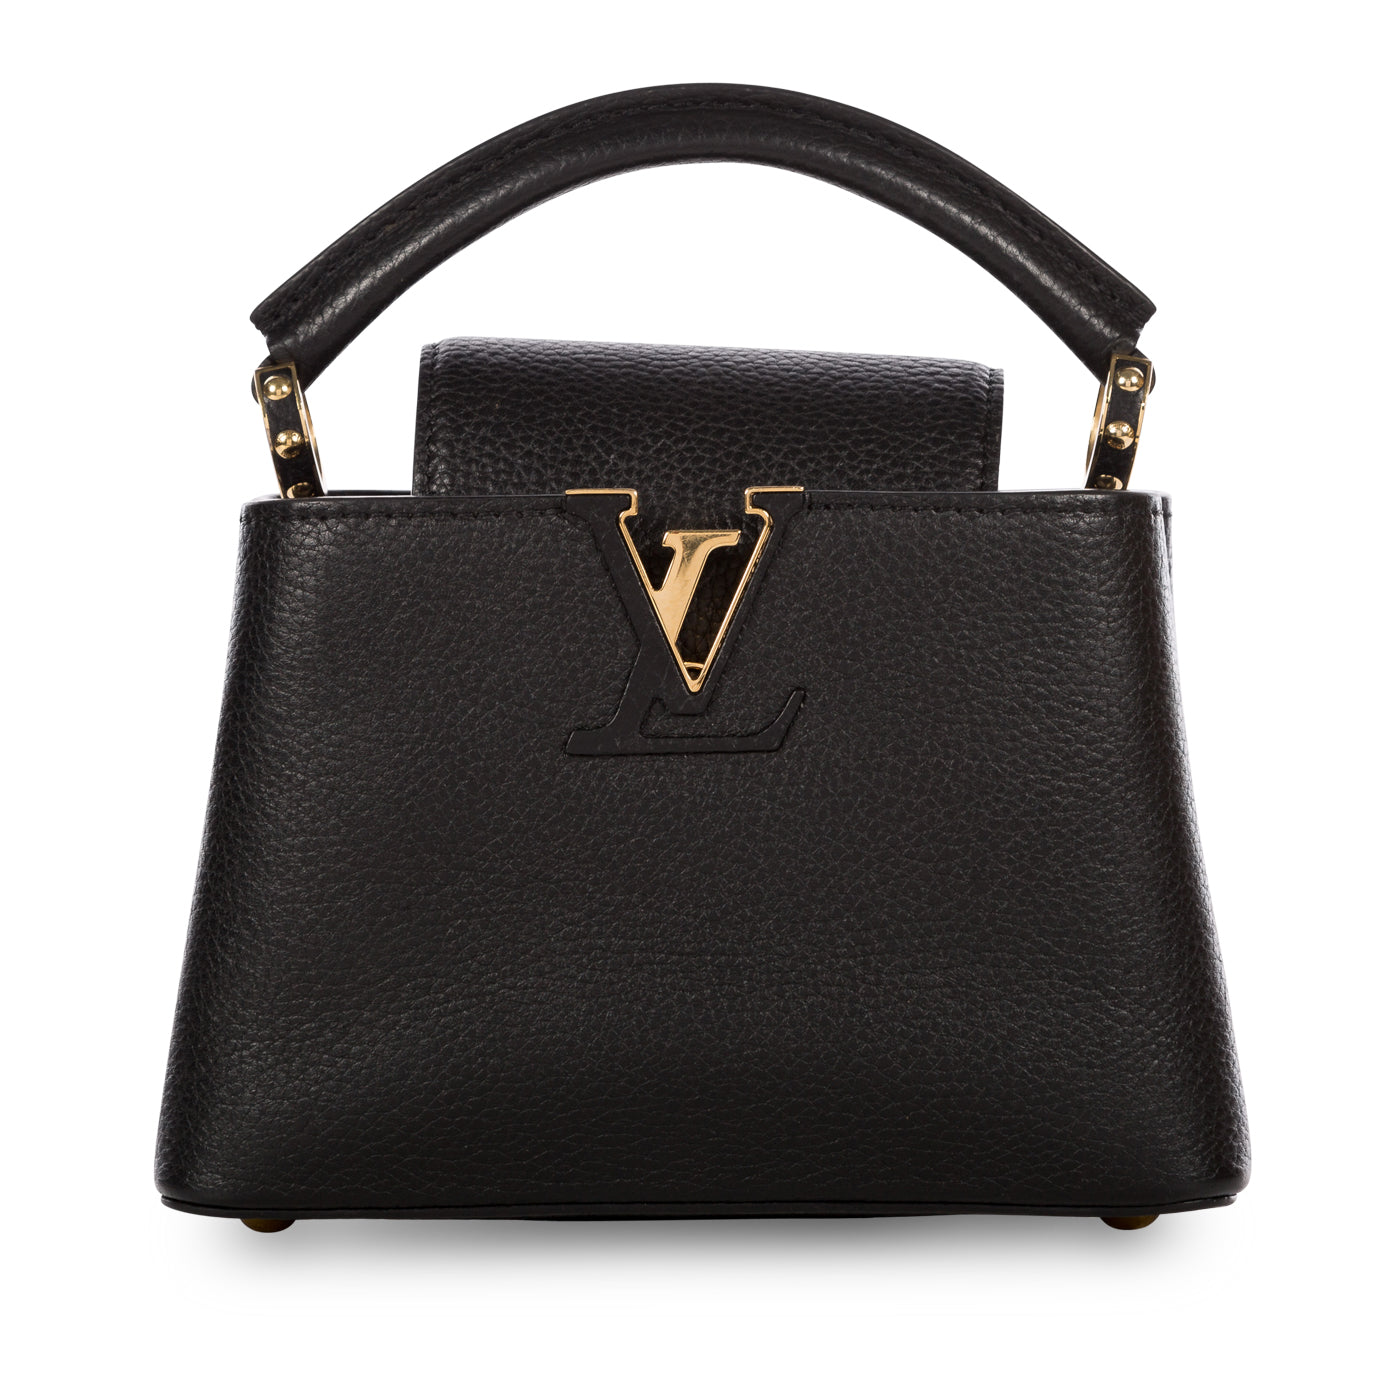 SAVE THIS - Louis Vuitton Capucines bag review + size comparison